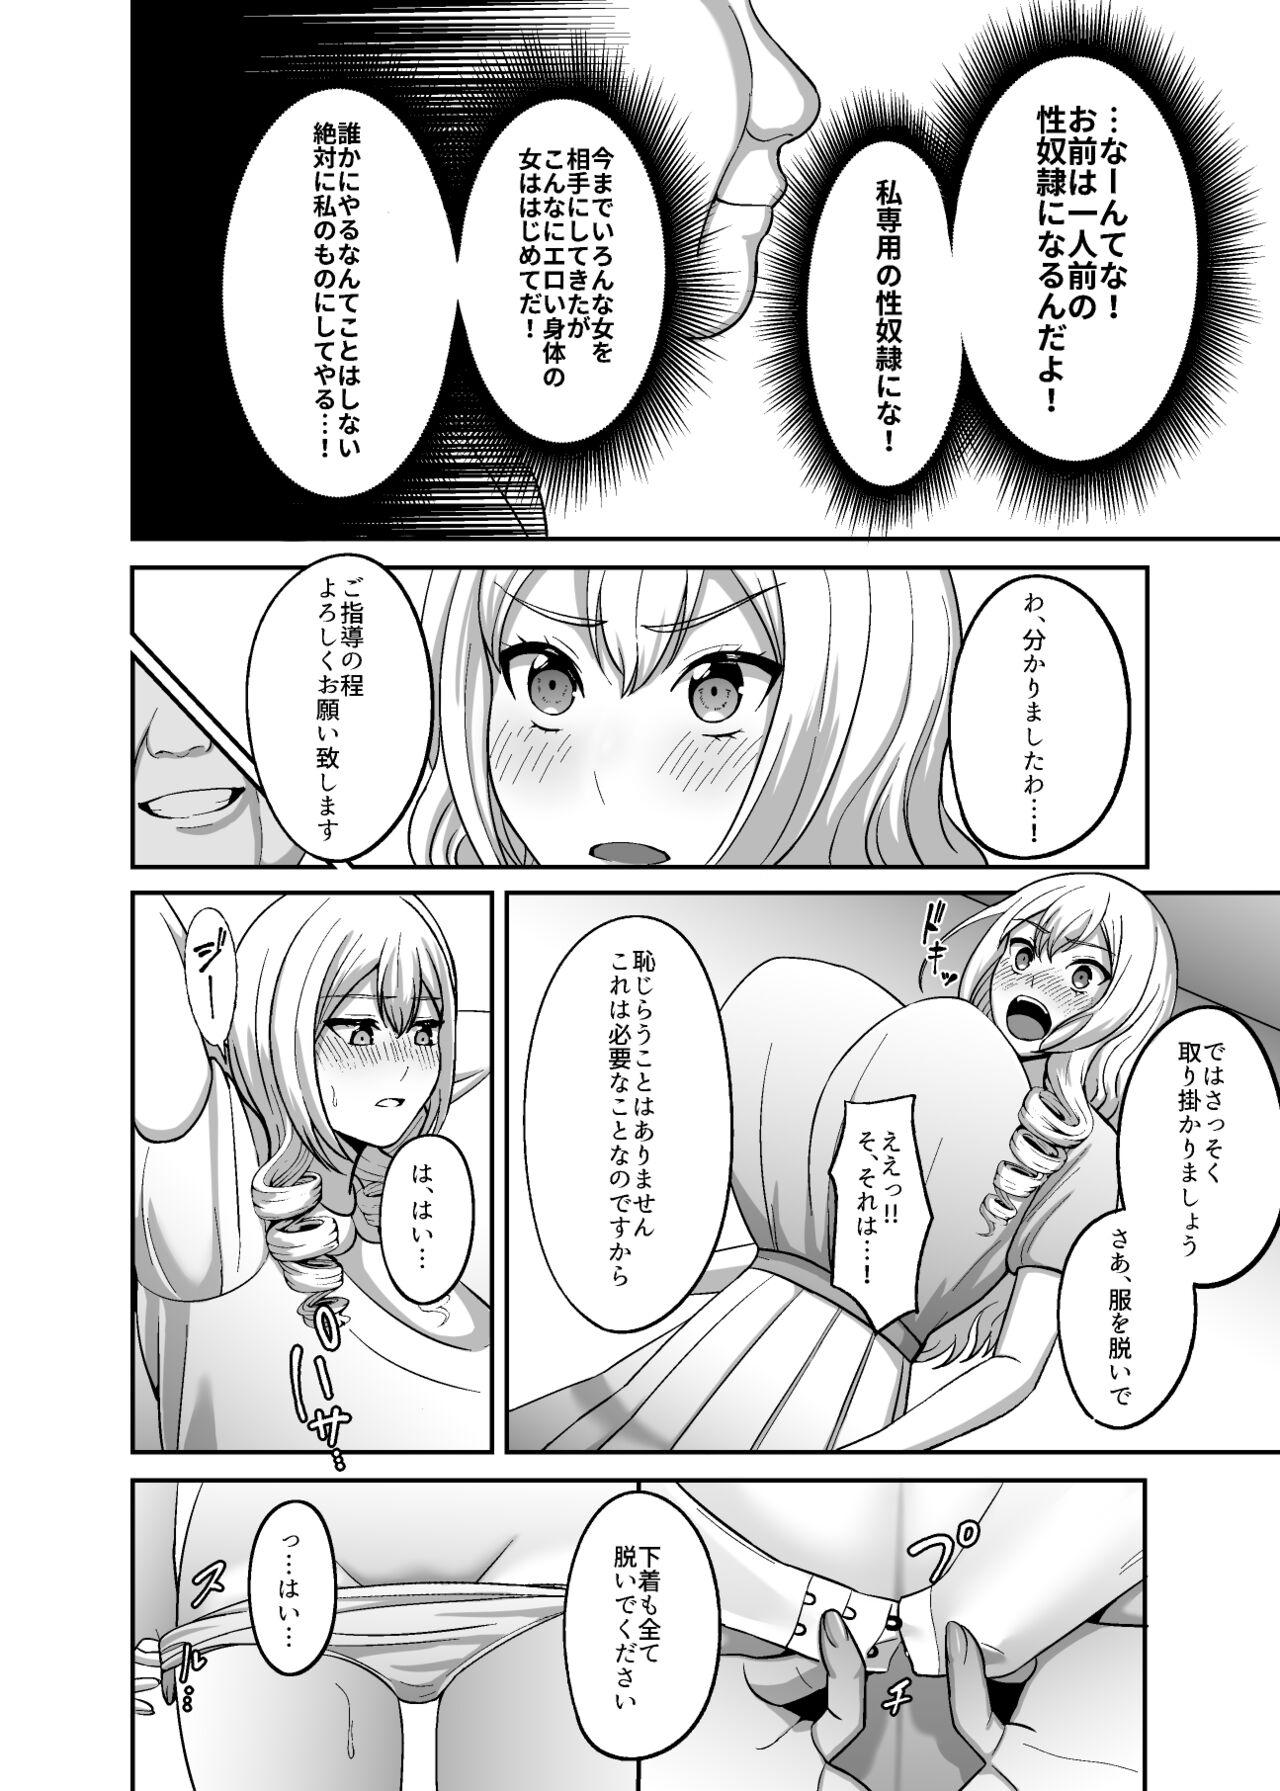 Masturbacion Ichiryuu no Lady wa Seikoui no Gijutsu mo Ichiryuu denakute wa - Original Spreading - Page 5